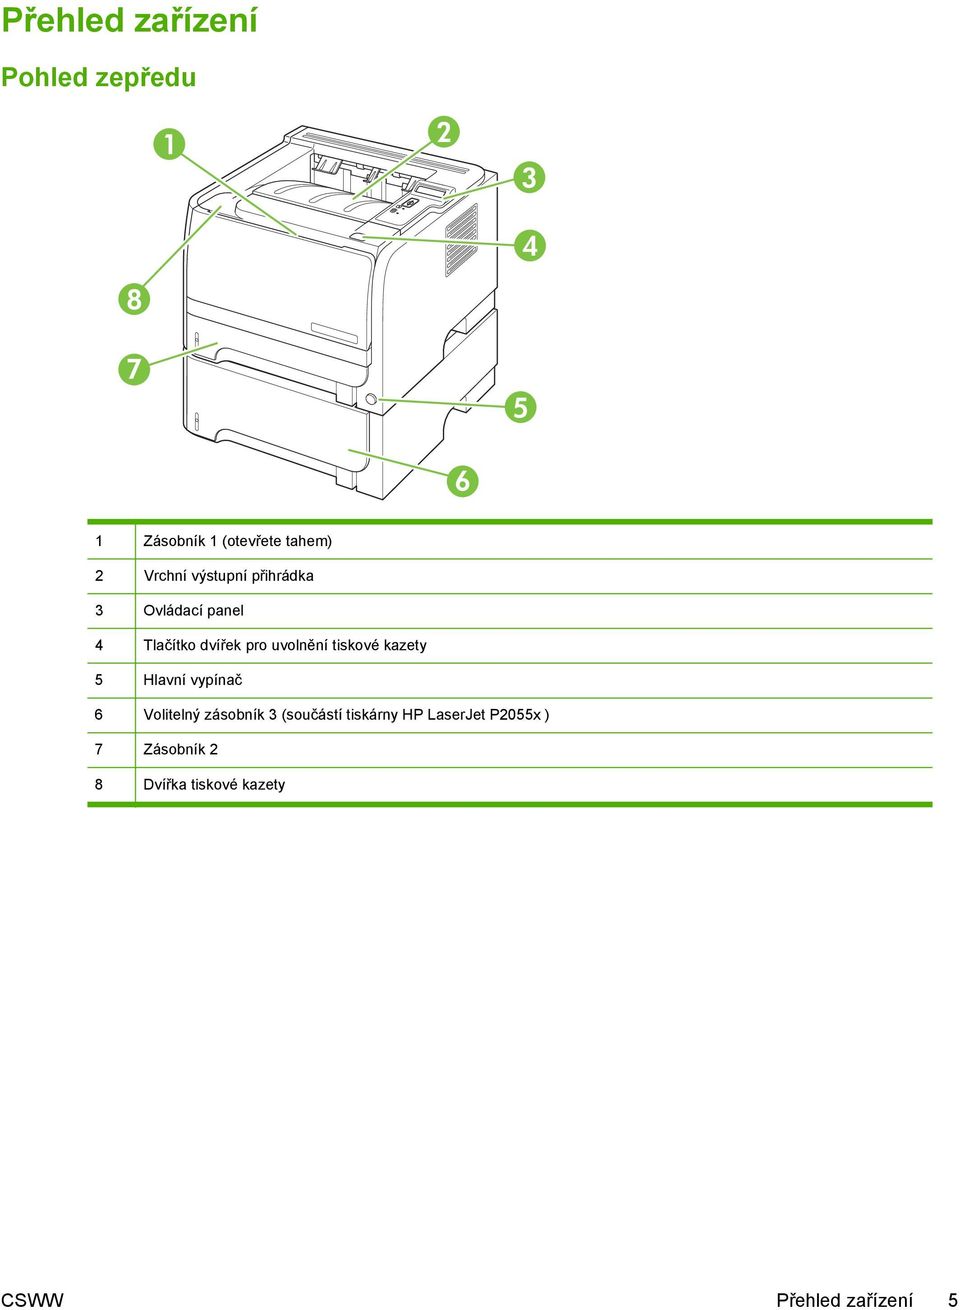 tiskové kazety 5 Hlavní vypínač 6 Volitelný zásobník 3 (součástí tiskárny HP